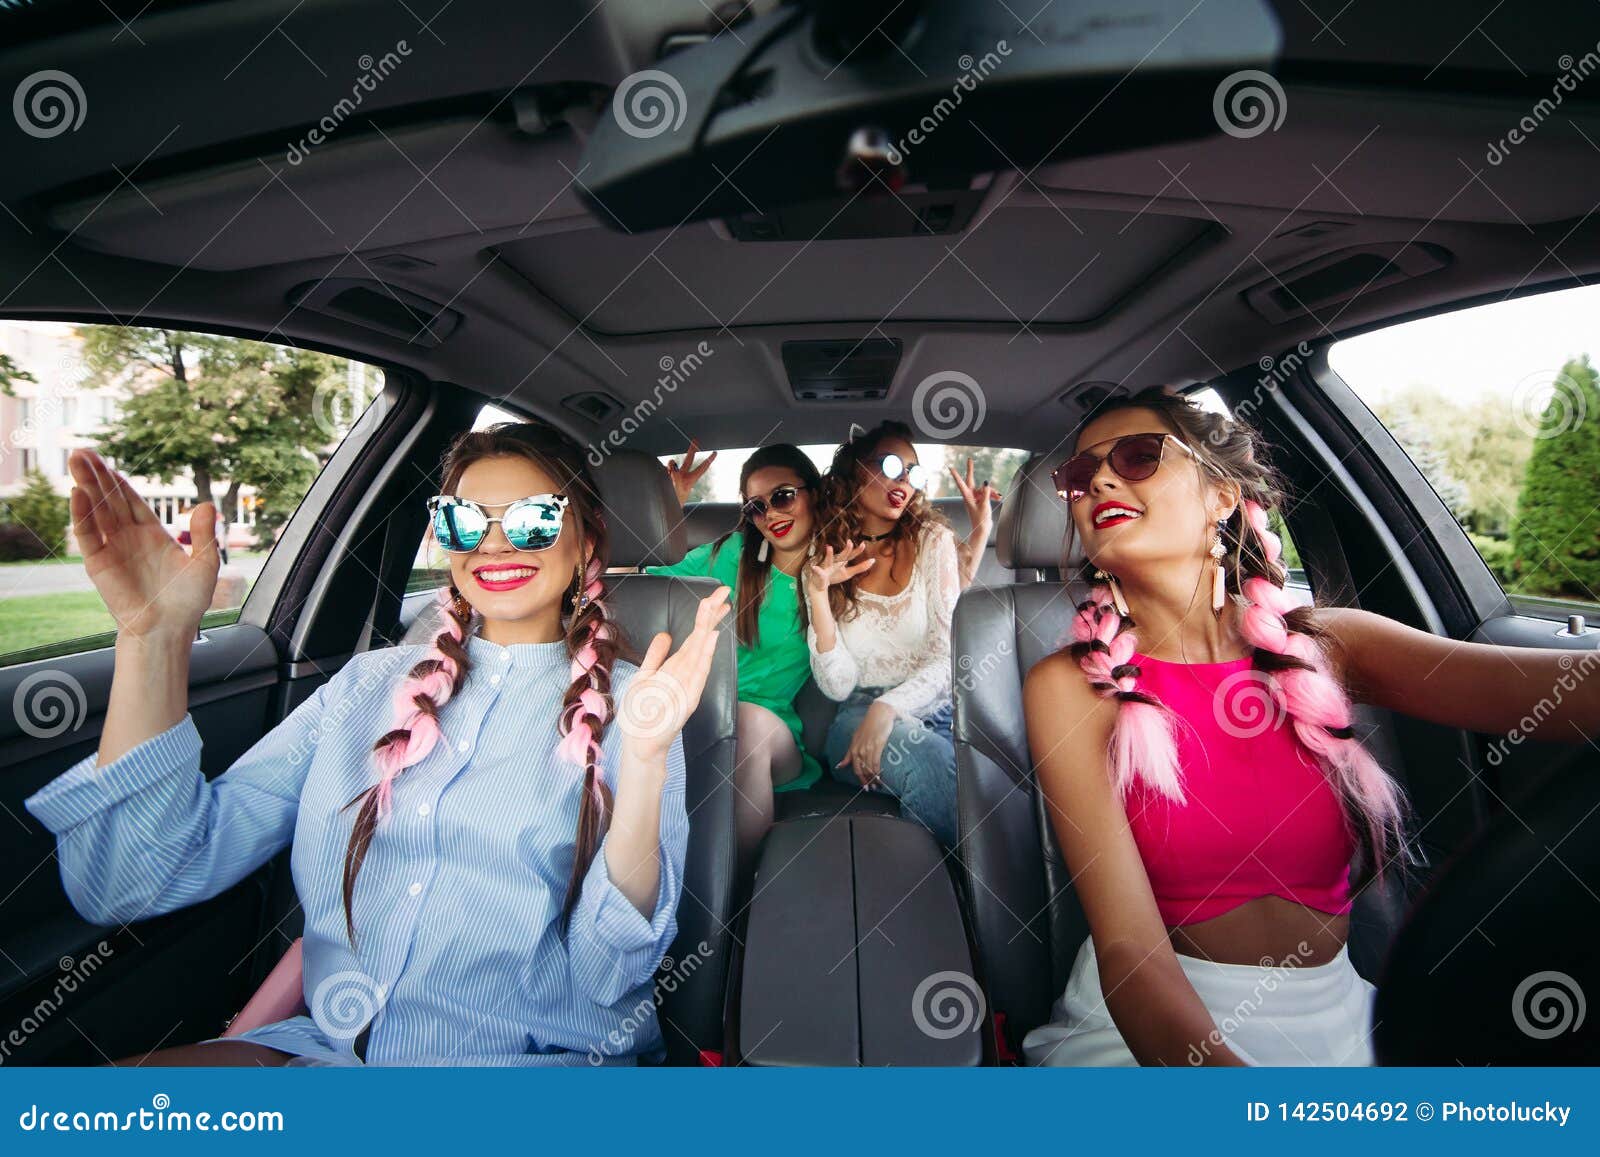 Едем с подругой мужа. Подружки едут в открытой машине. Singing in the car. Старые подруги едут на дискотеку. The owner of the car аудирование ответы.